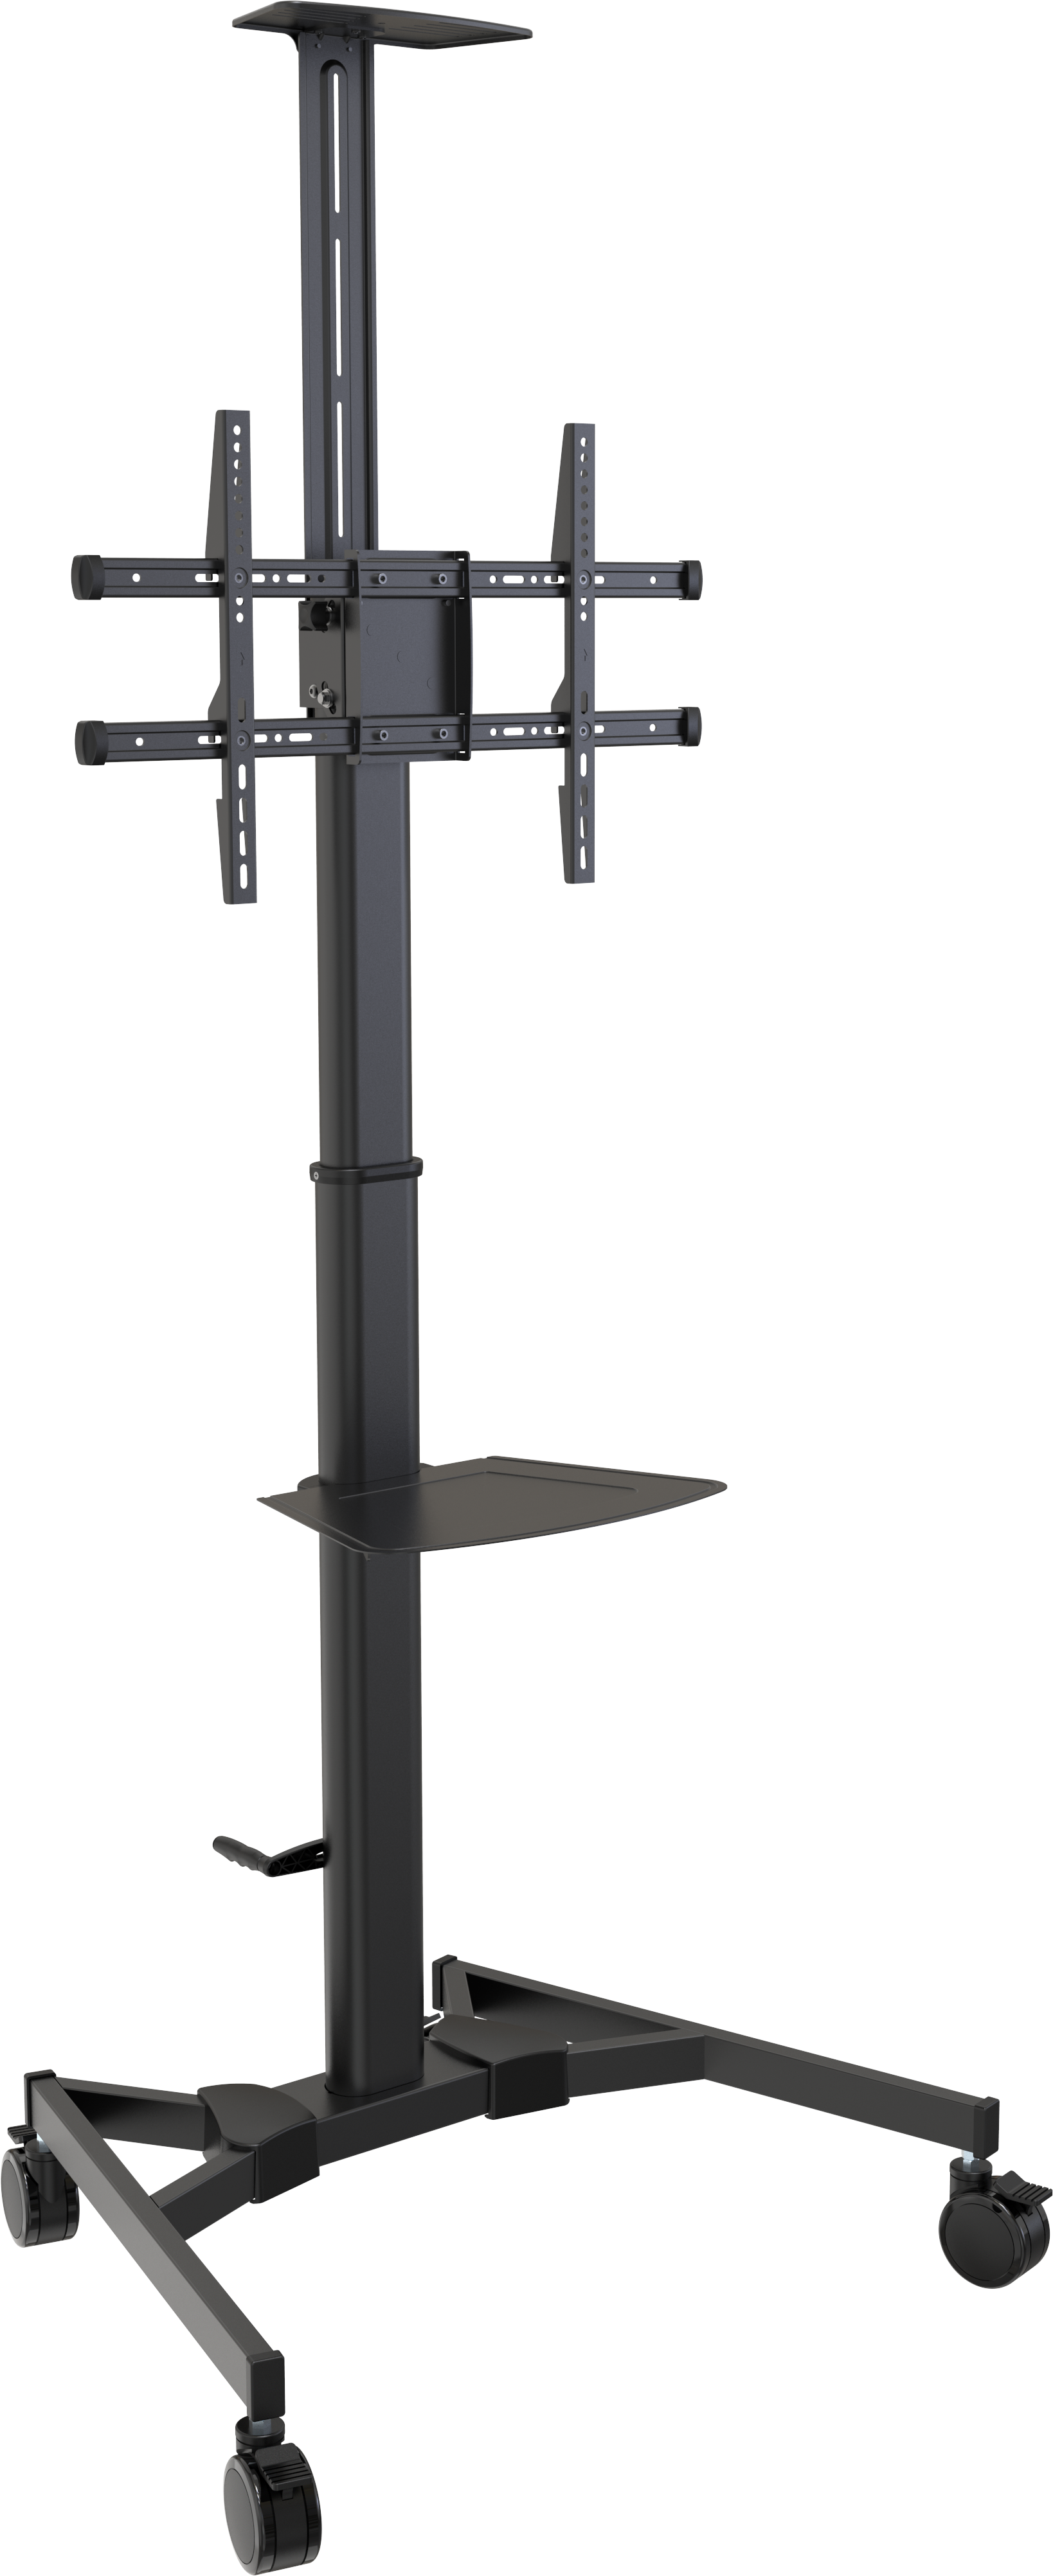 An image showing In hoogte verstelbaar karretje voor monitoren tot 45 kg